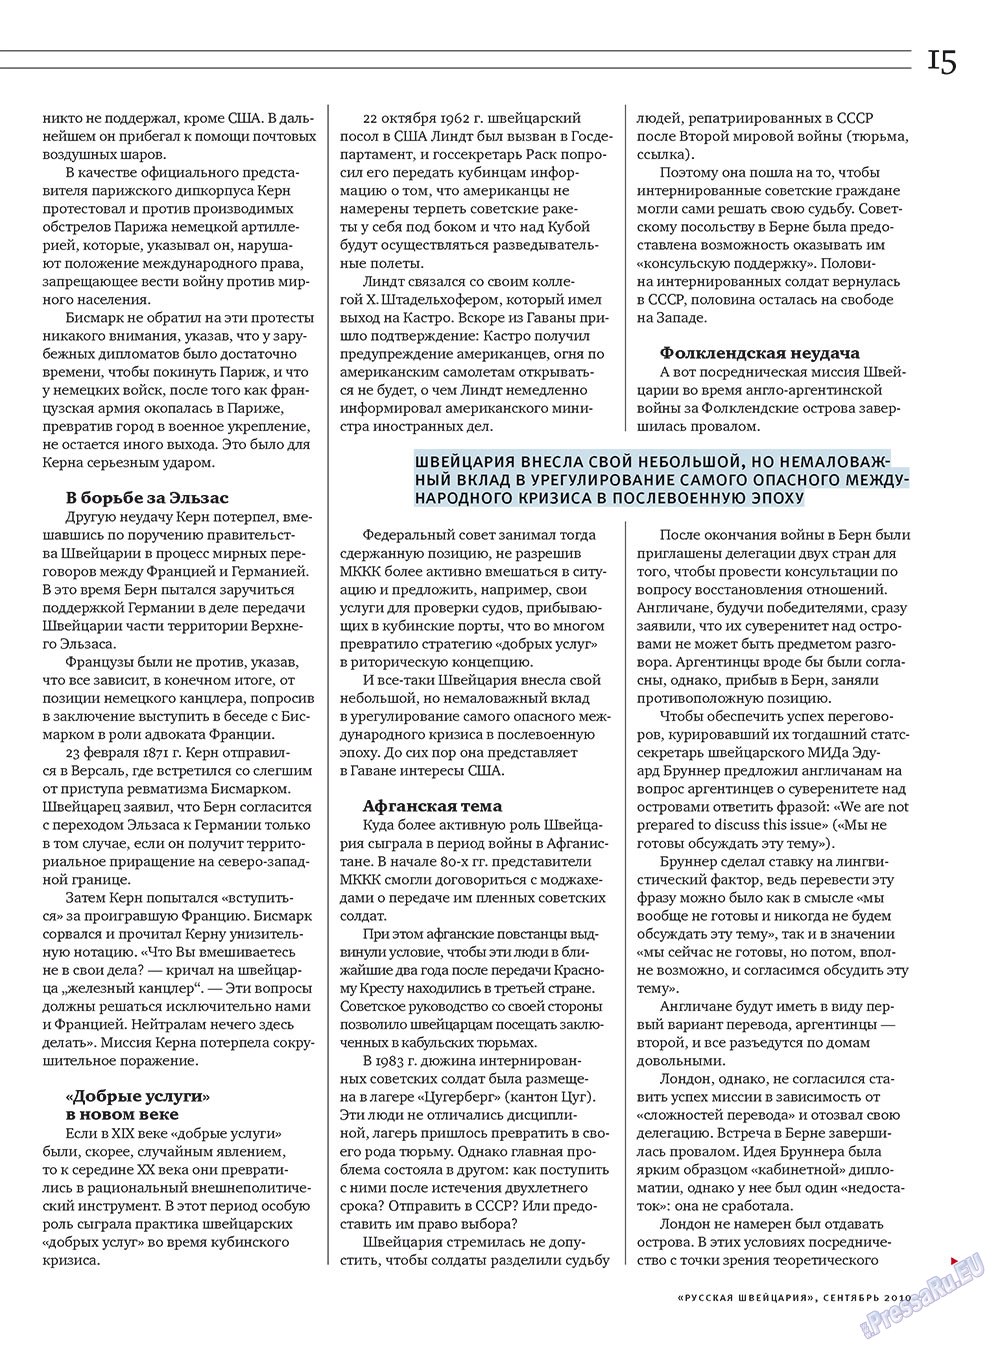 Русская Швейцария, журнал. 2010 №7 стр.15